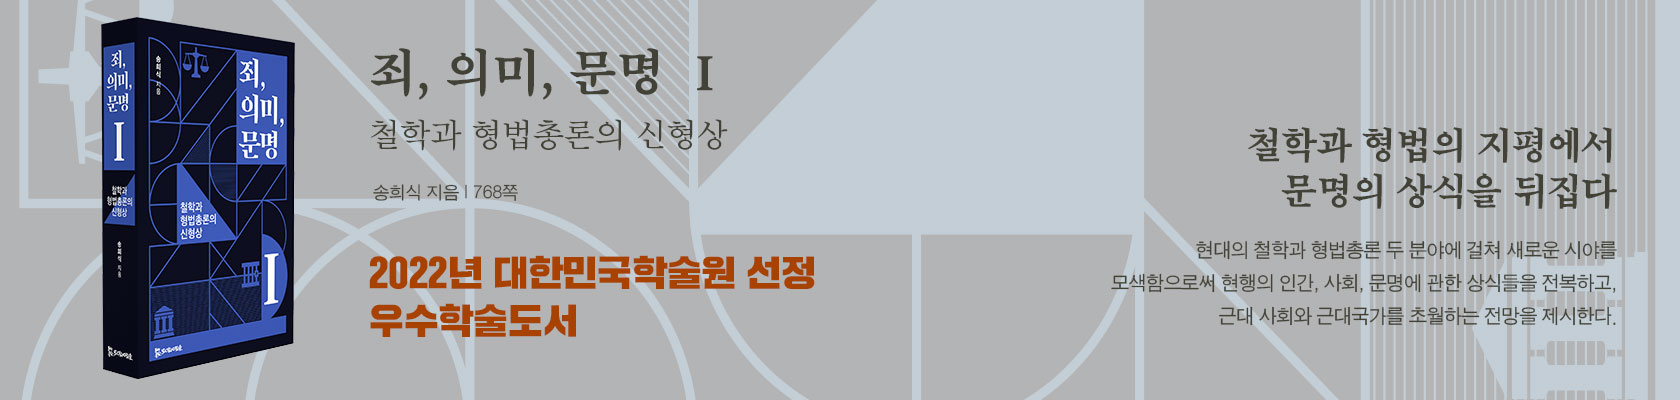 『죄, 의미 문명 Ⅰ』 2022년 대한민국학술원 우수학술도서 선정